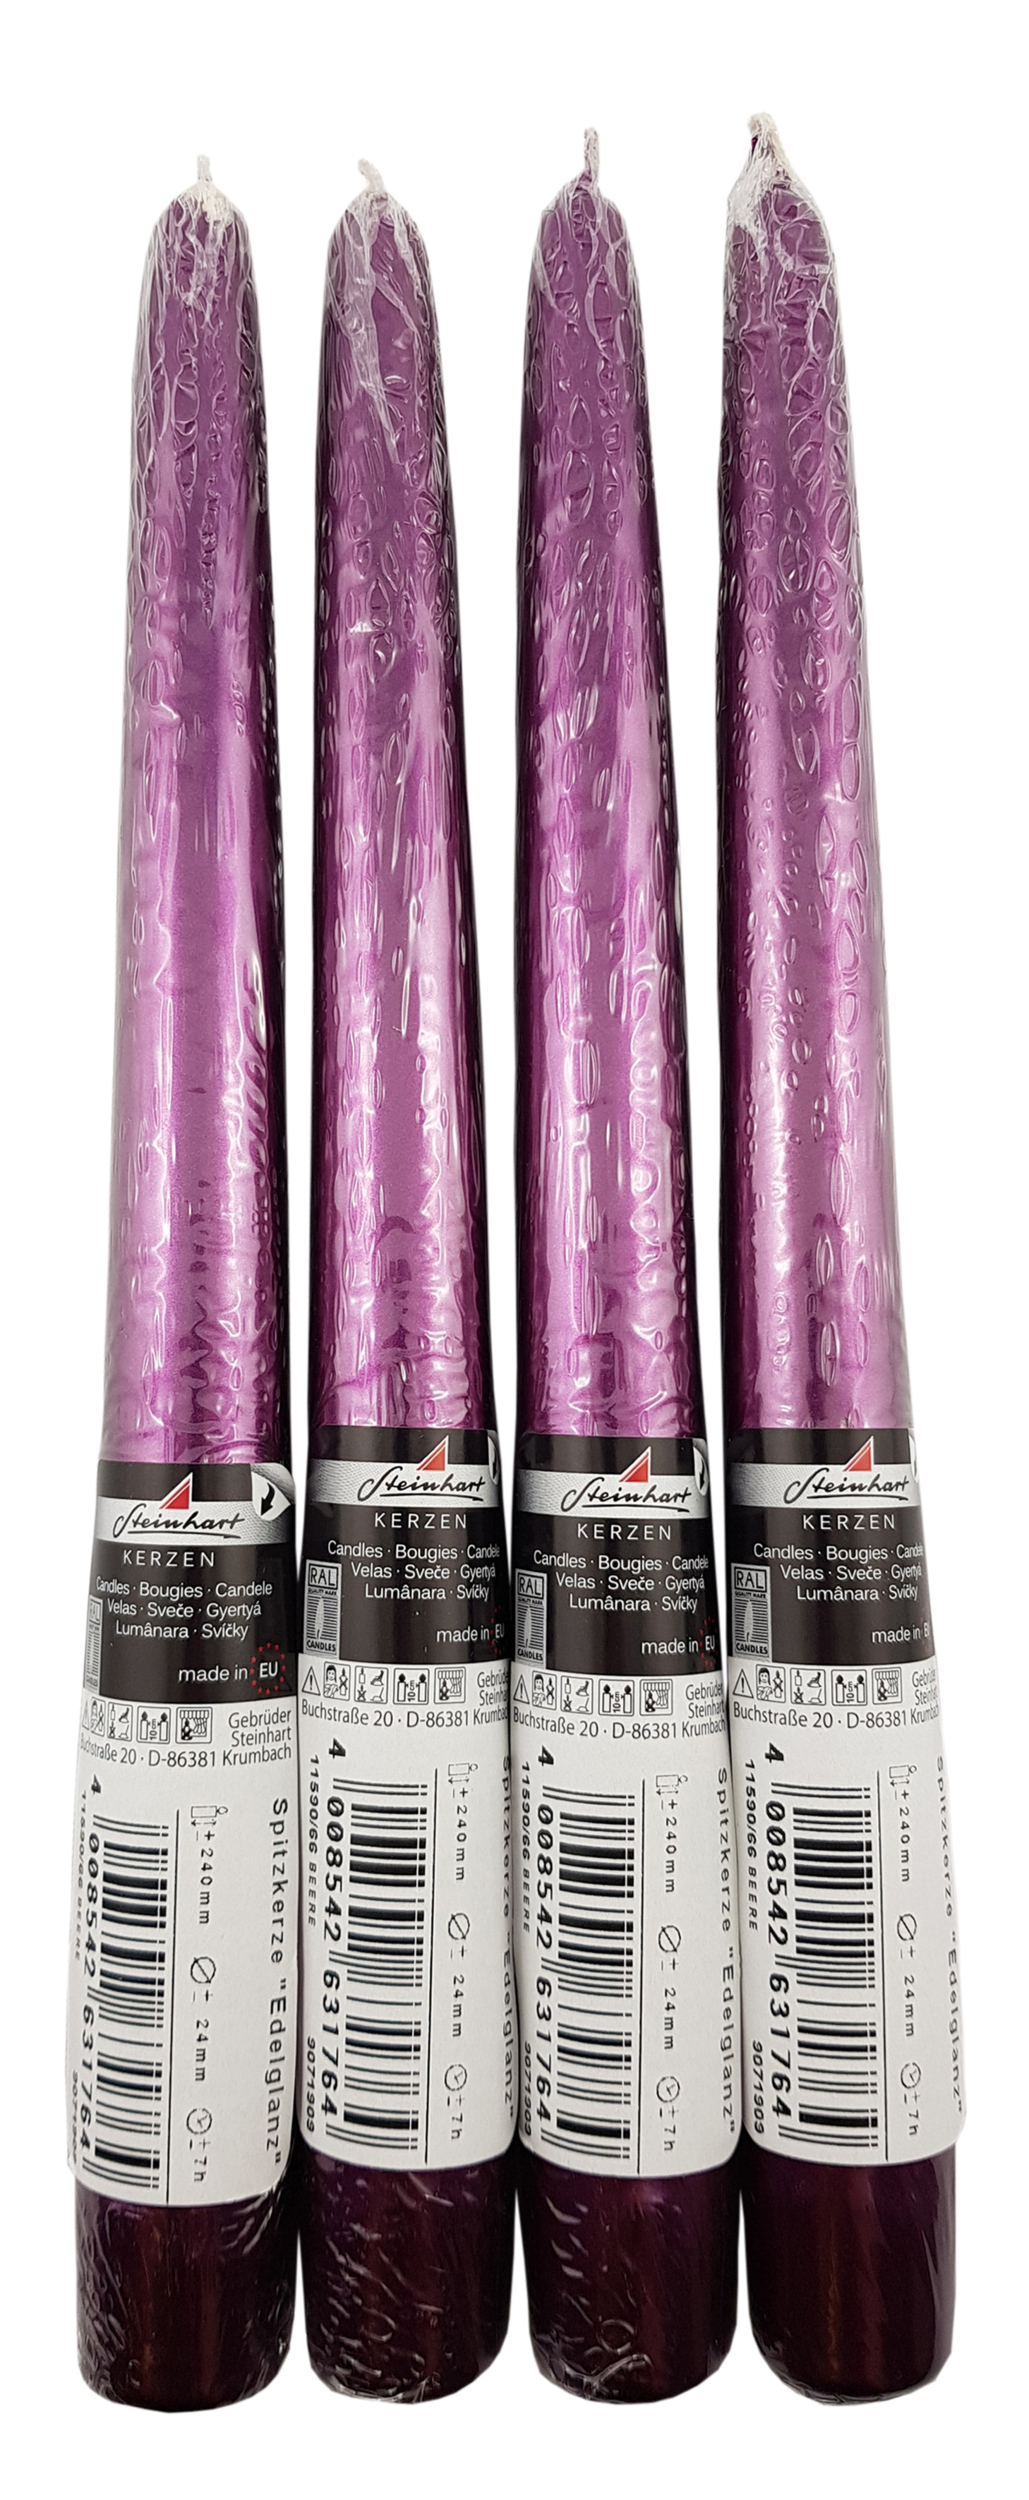 Lot de 4 bougies flambeaux coloris violet foncé métallisé. Réf. 185